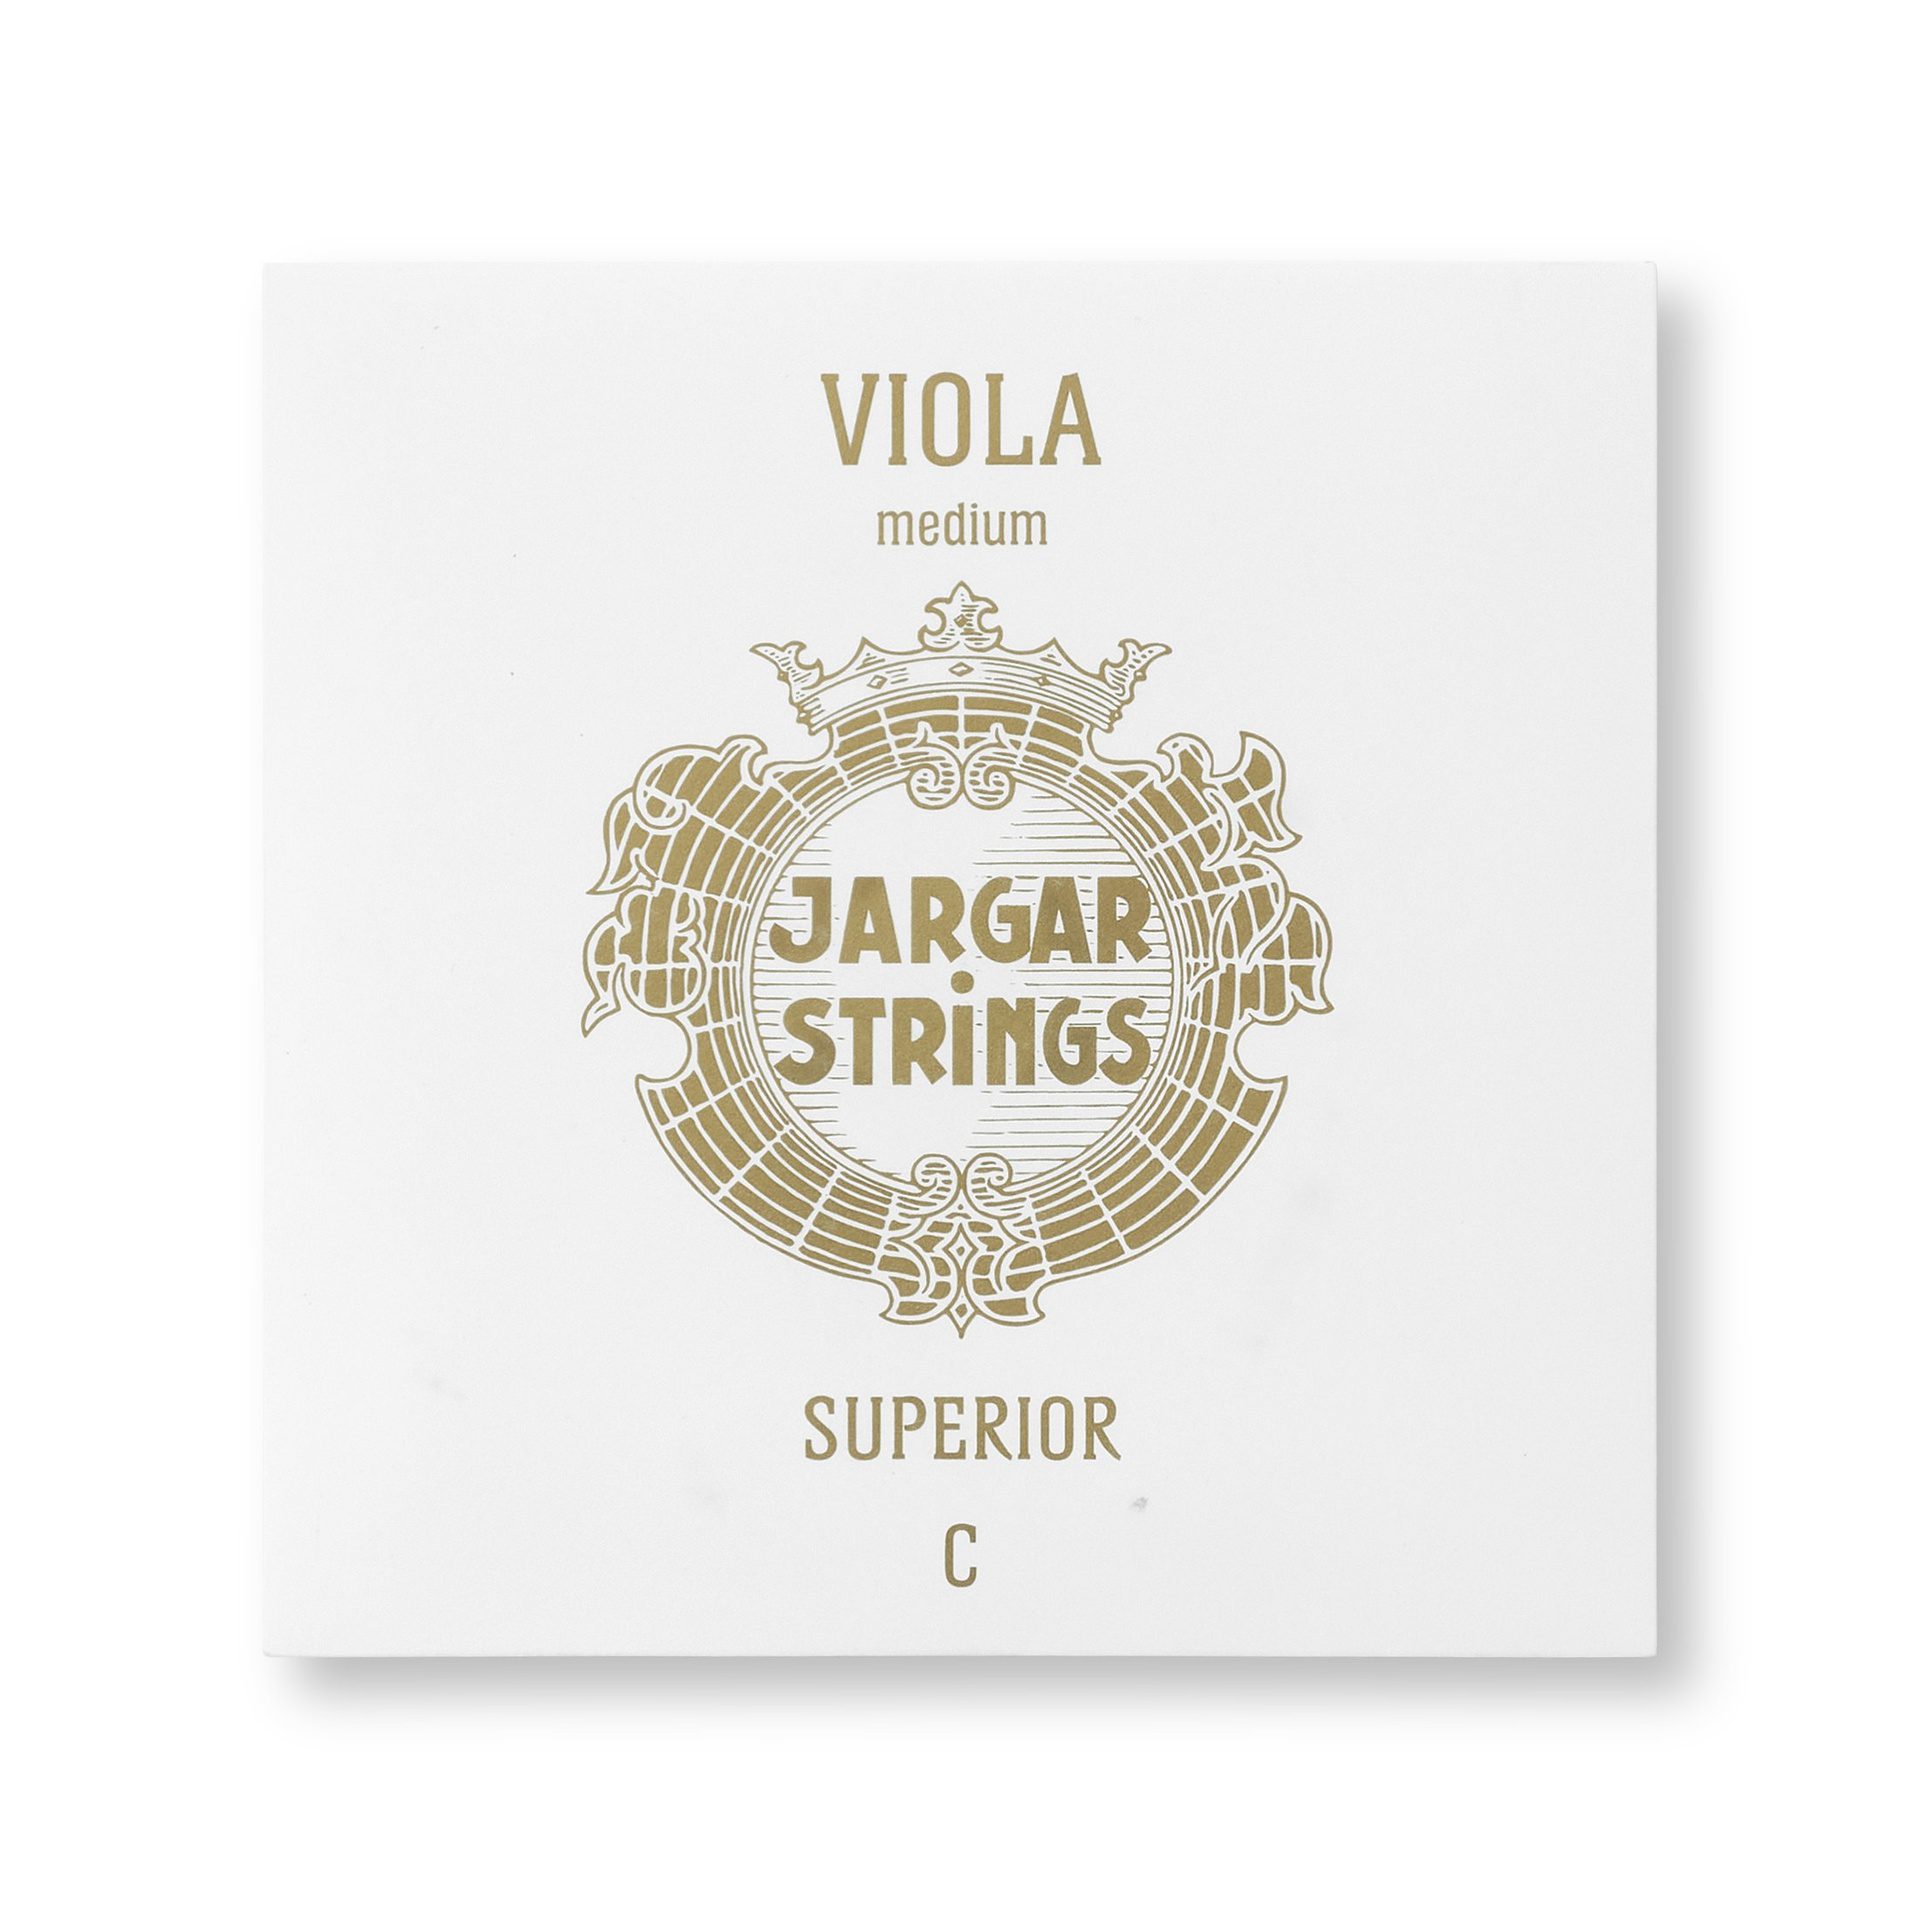 Superior Viola - Medium, Single C String, 4/4